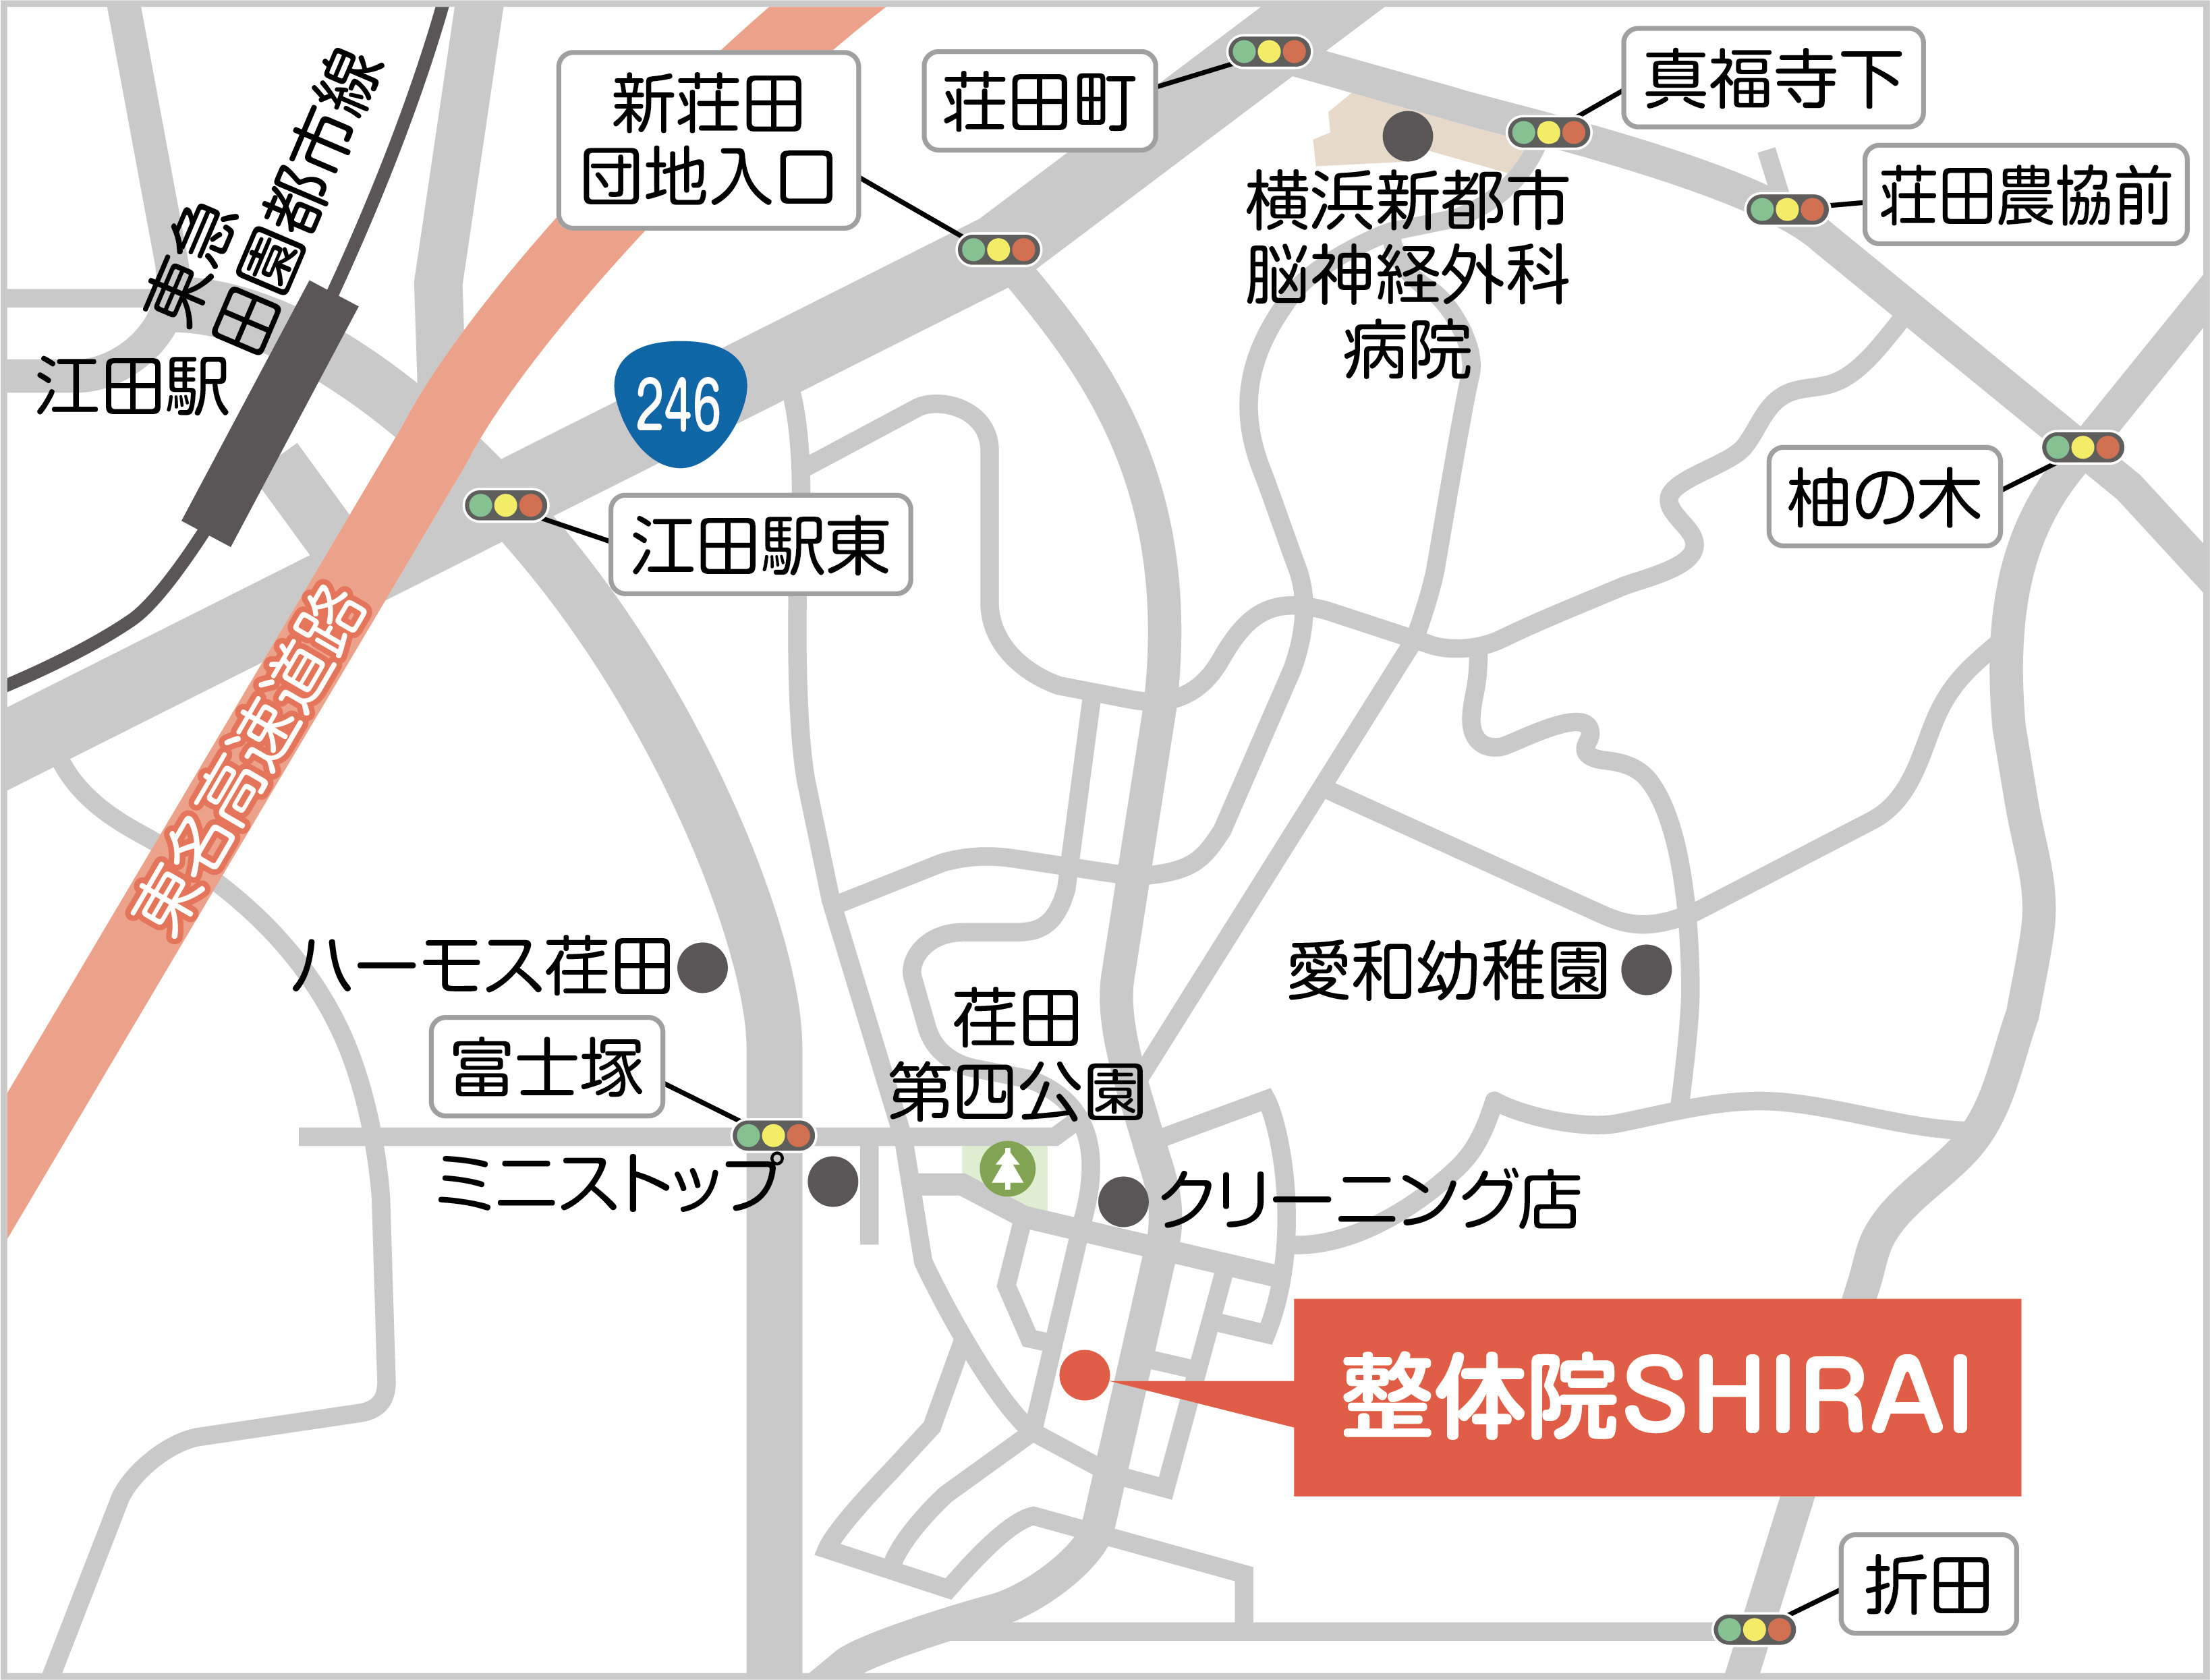 整体院 SHIRAI 地図